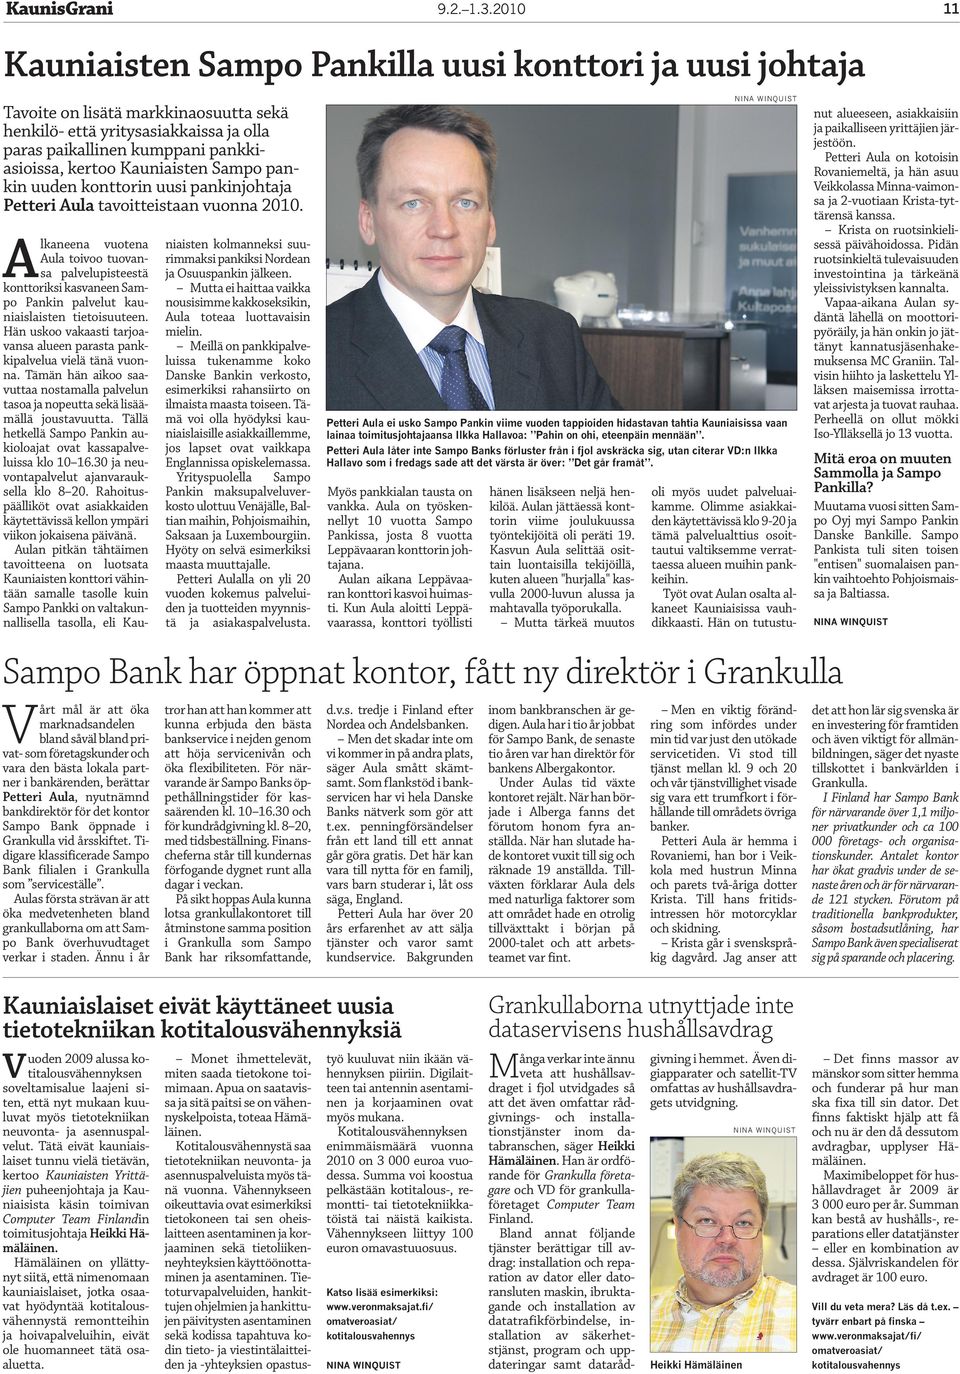 Kauniaisten Sampo pankin uuden konttorin uusi pankinjohtaja Petteri Aula tavoitteistaan vuonna 2010.